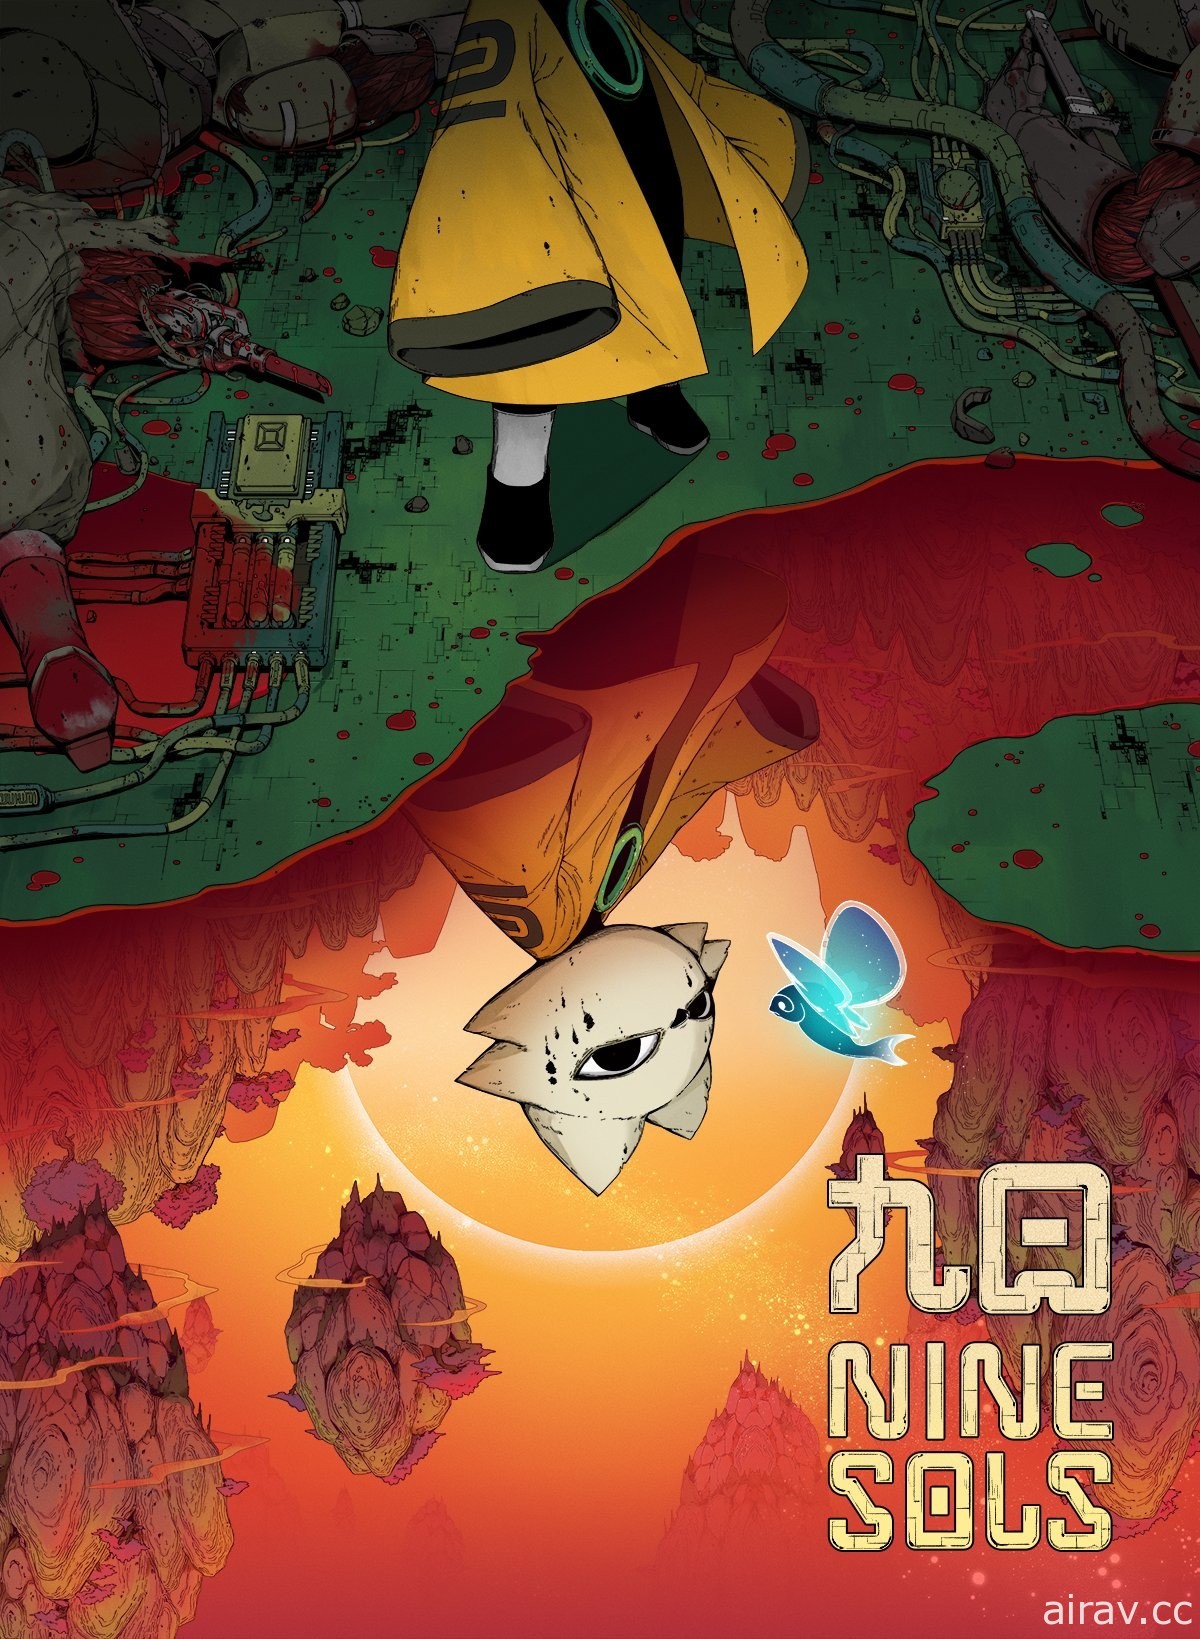 《返校》团队赤烛游戏公开以“道庞克”为背景的动作冒险游戏《九日 Nine Sols》